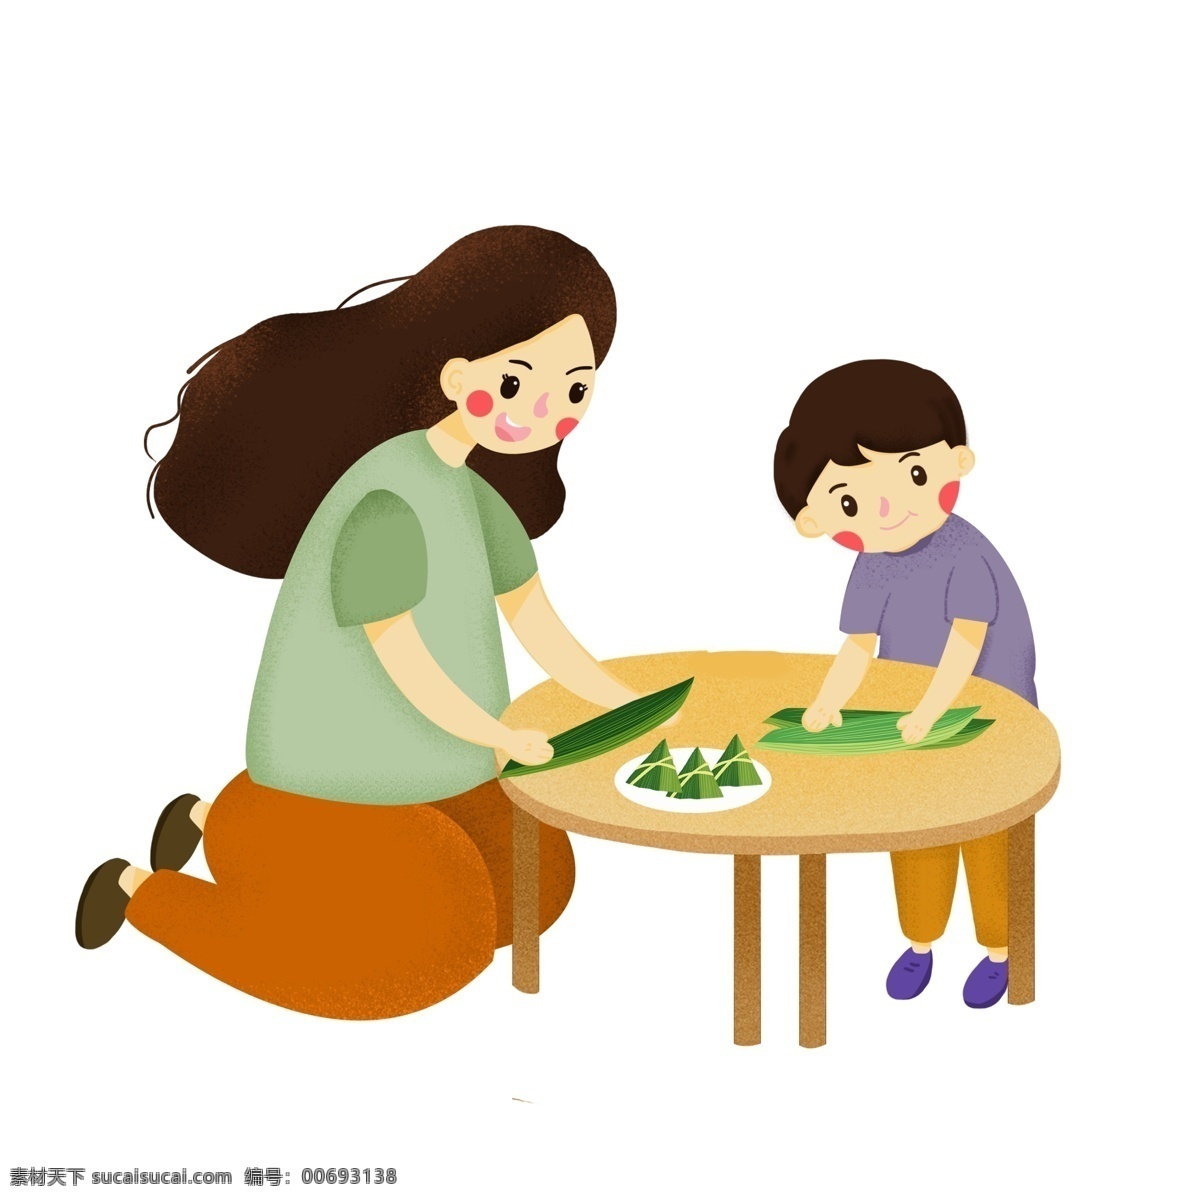 端午节 母子 包 粽子 包粽子 习俗 粽叶 糯米 美食 传统食物 糯米粽子 妈妈 母亲 小孩卡通 桌子卡通